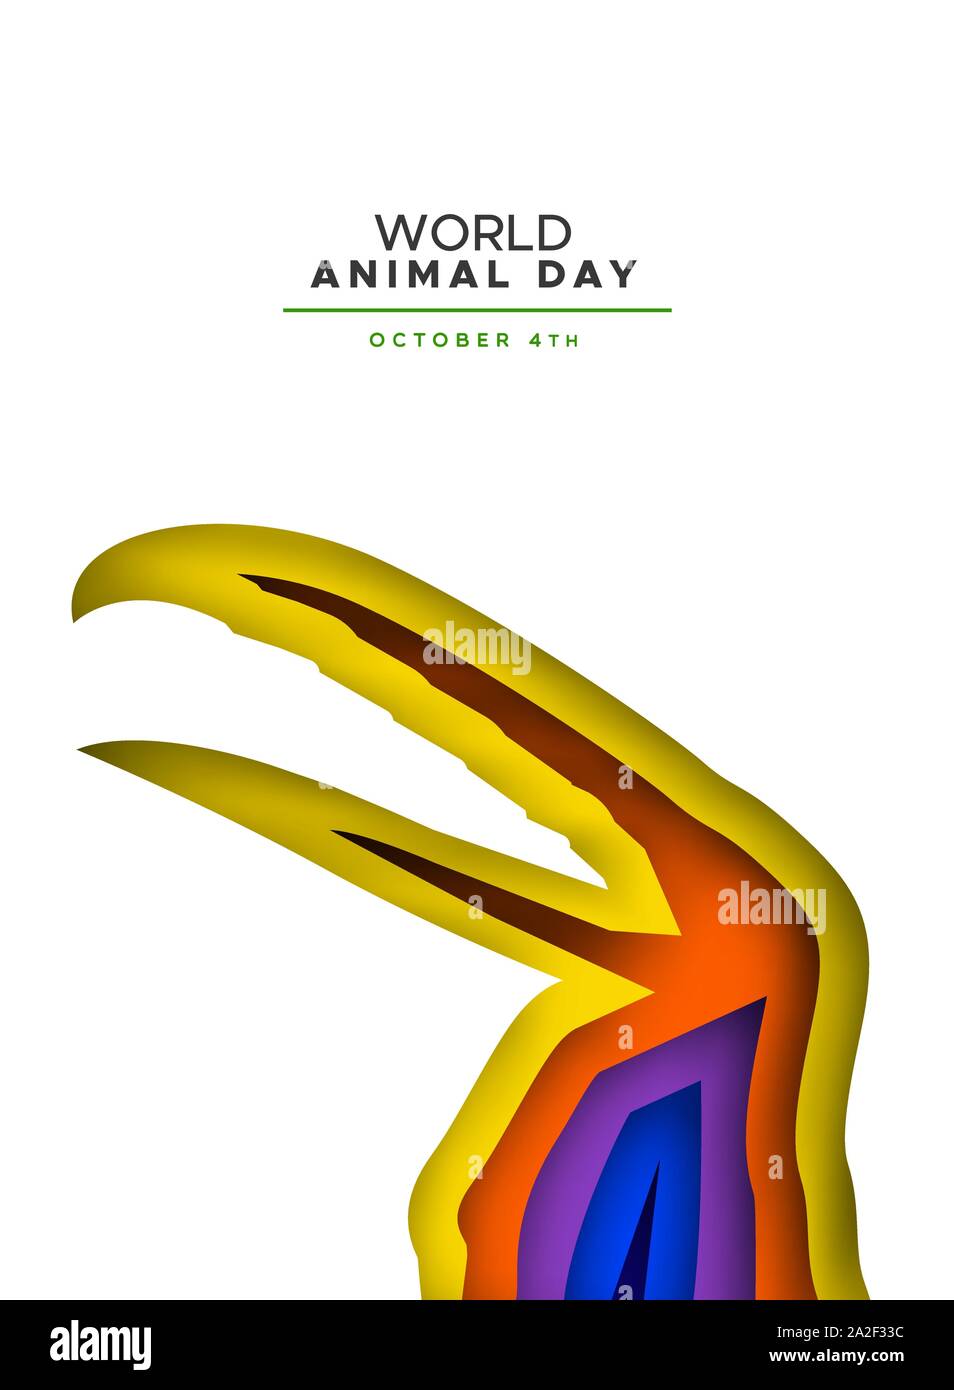 Journée mondiale des animaux papercut illustration de couches colorées oiseau toucan découpe. Concept pour la conservation des espèces en péril la faune, de la protection de la maison de vacances de Illustration de Vecteur